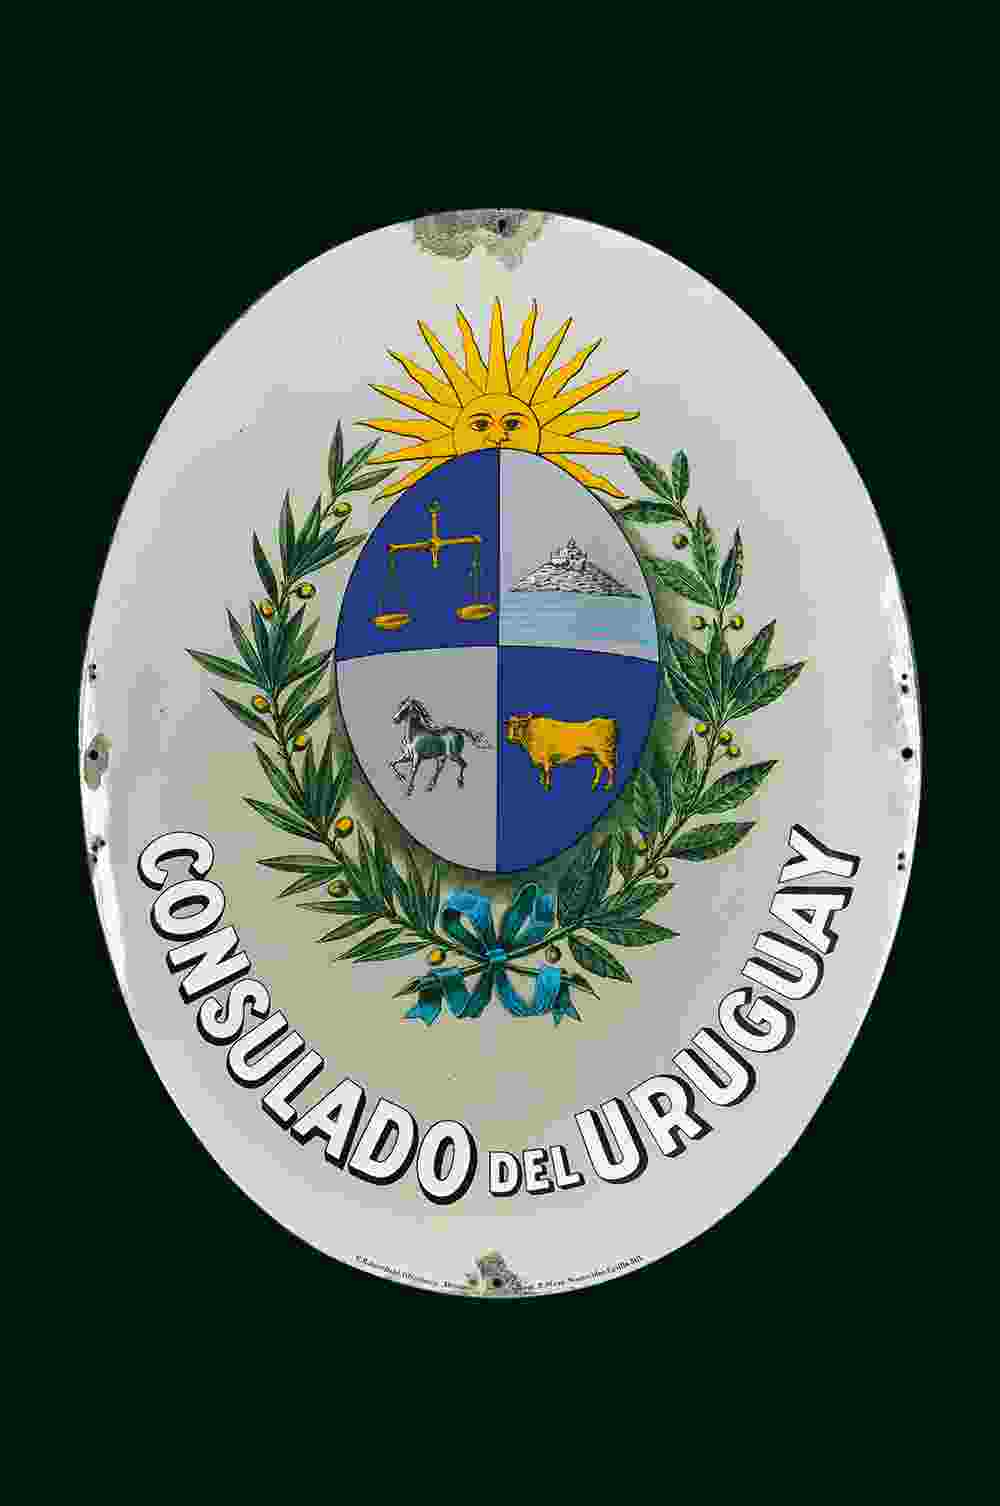 Consulado del Uruguay 